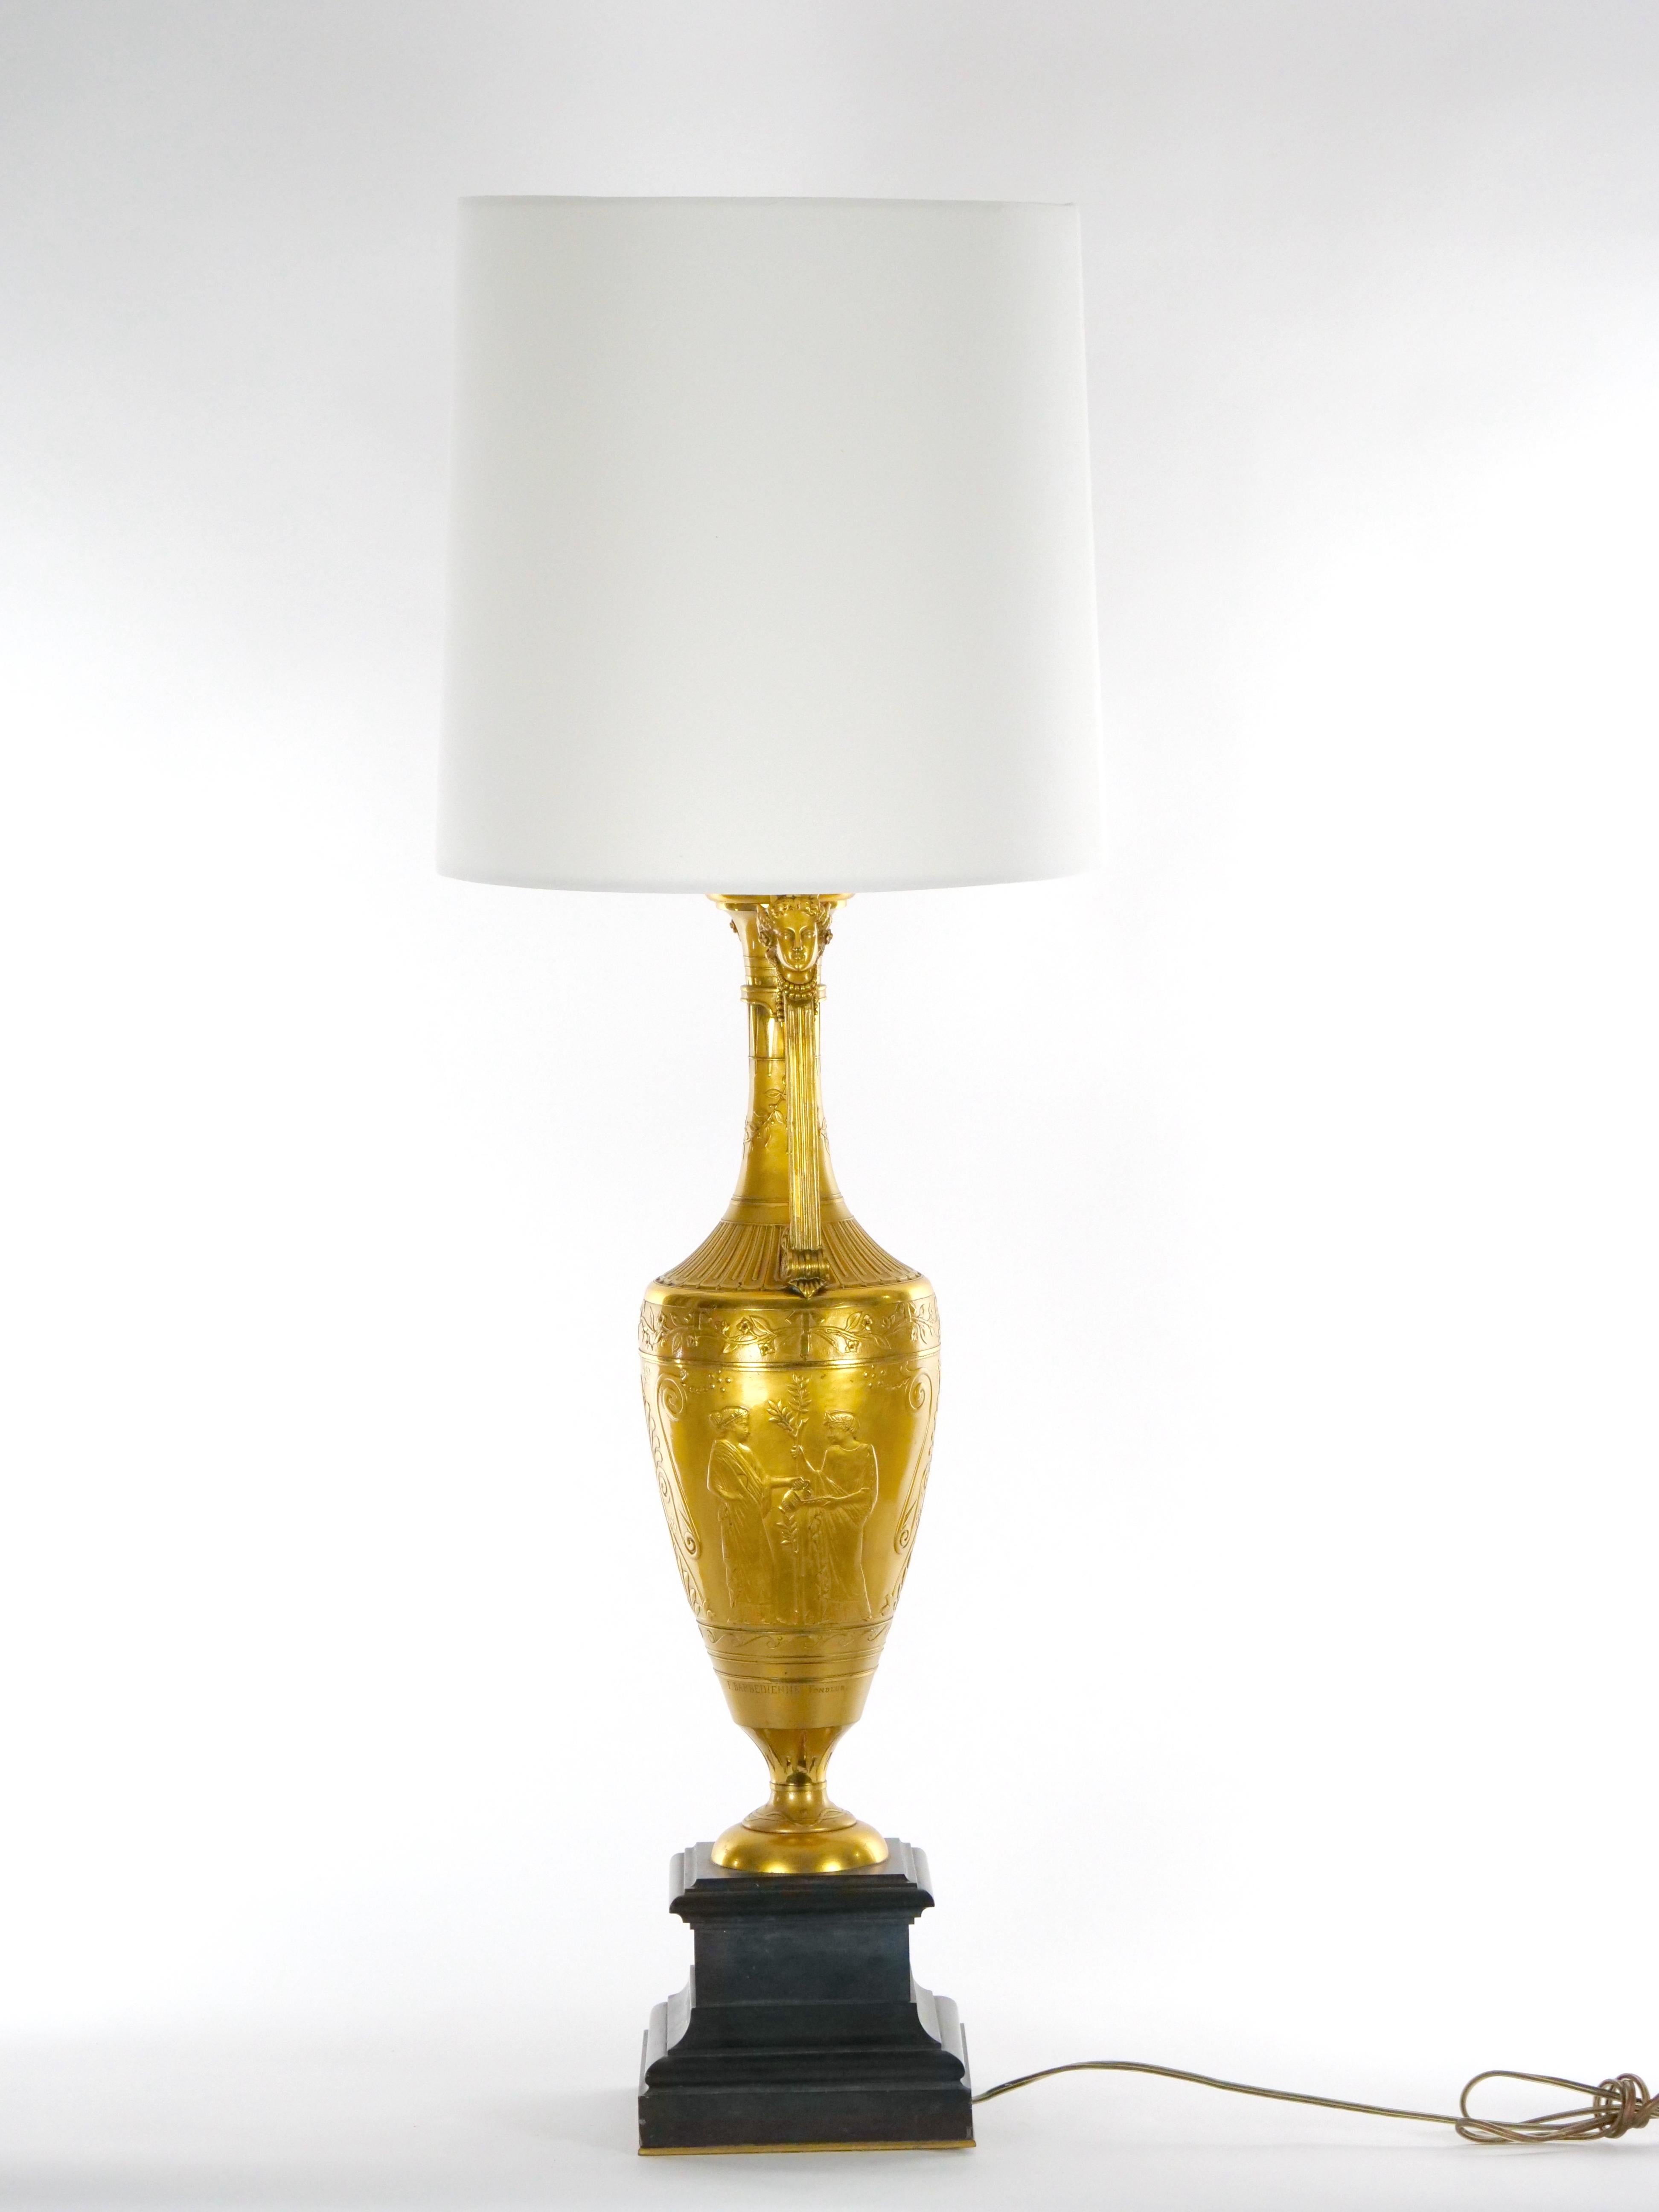 Exceptionnelle lampe de table en bronze doré et base en marbre noir. Réalisée par le célèbre fabricant F. Famedienne, cette lampe est composée d'un socle en marbre noir quadrillé et de bronze doré dans le style Napoléon III. La lampe présente une